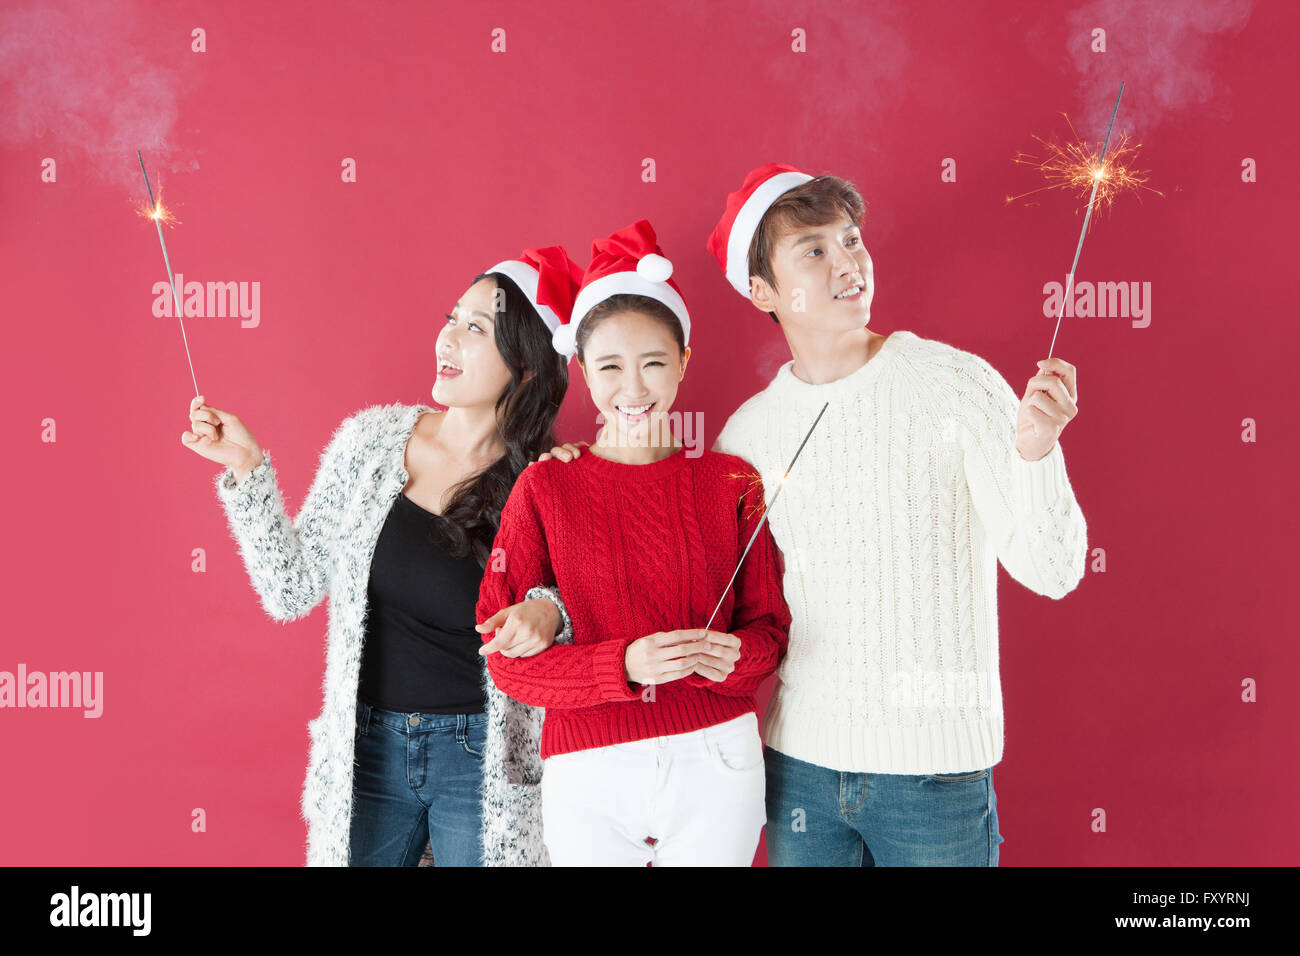 Portrait de trois jeunes smiling people wearing santa hats holding jusqu'à Fireworks Banque D'Images